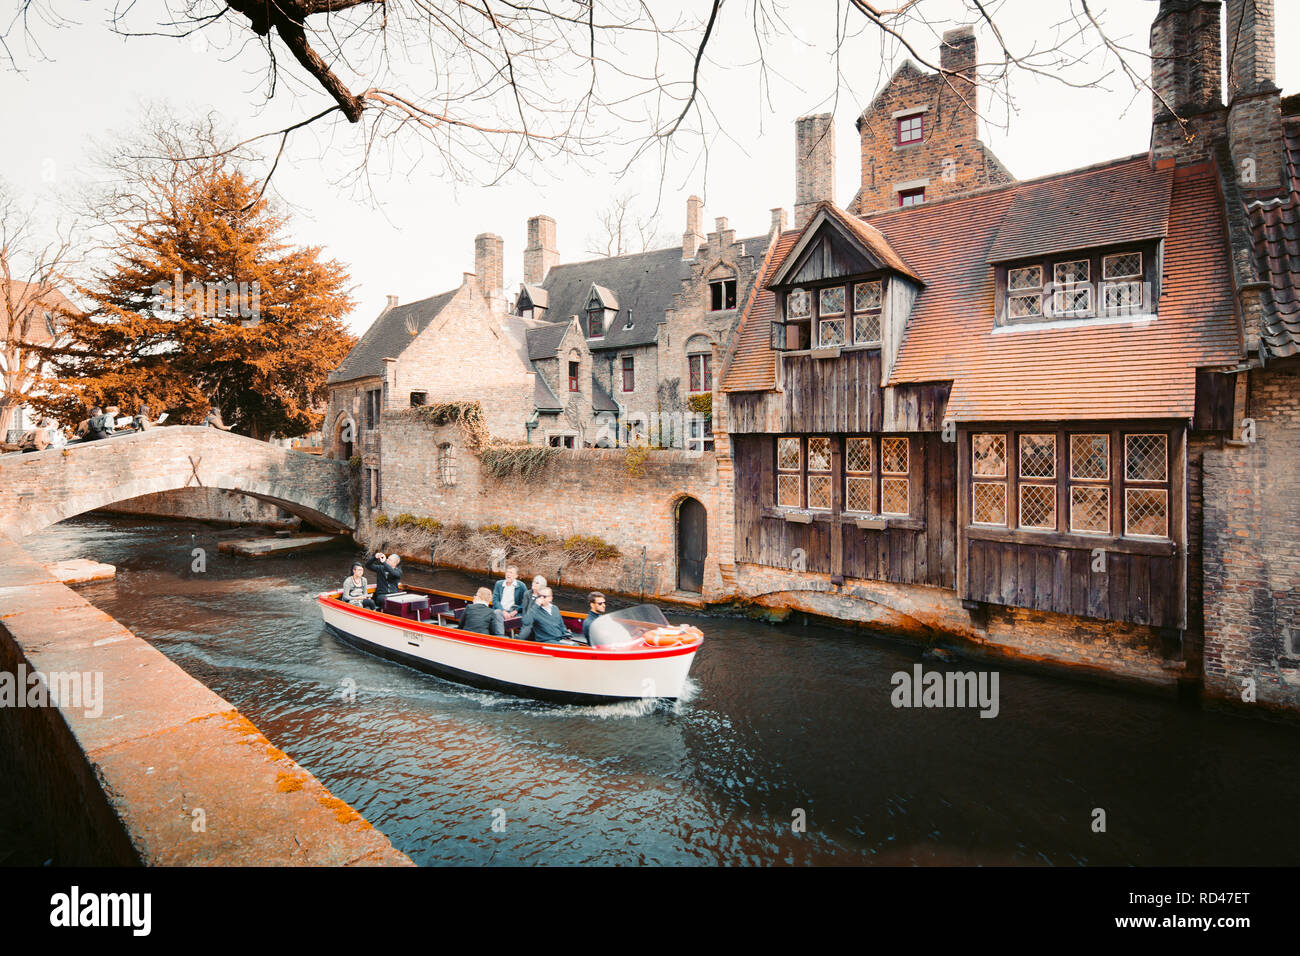 Les touristes de prendre une promenade en bateau à travers le centre-ville historique de Bruges, province de Flandre occidentale, Belgique Banque D'Images